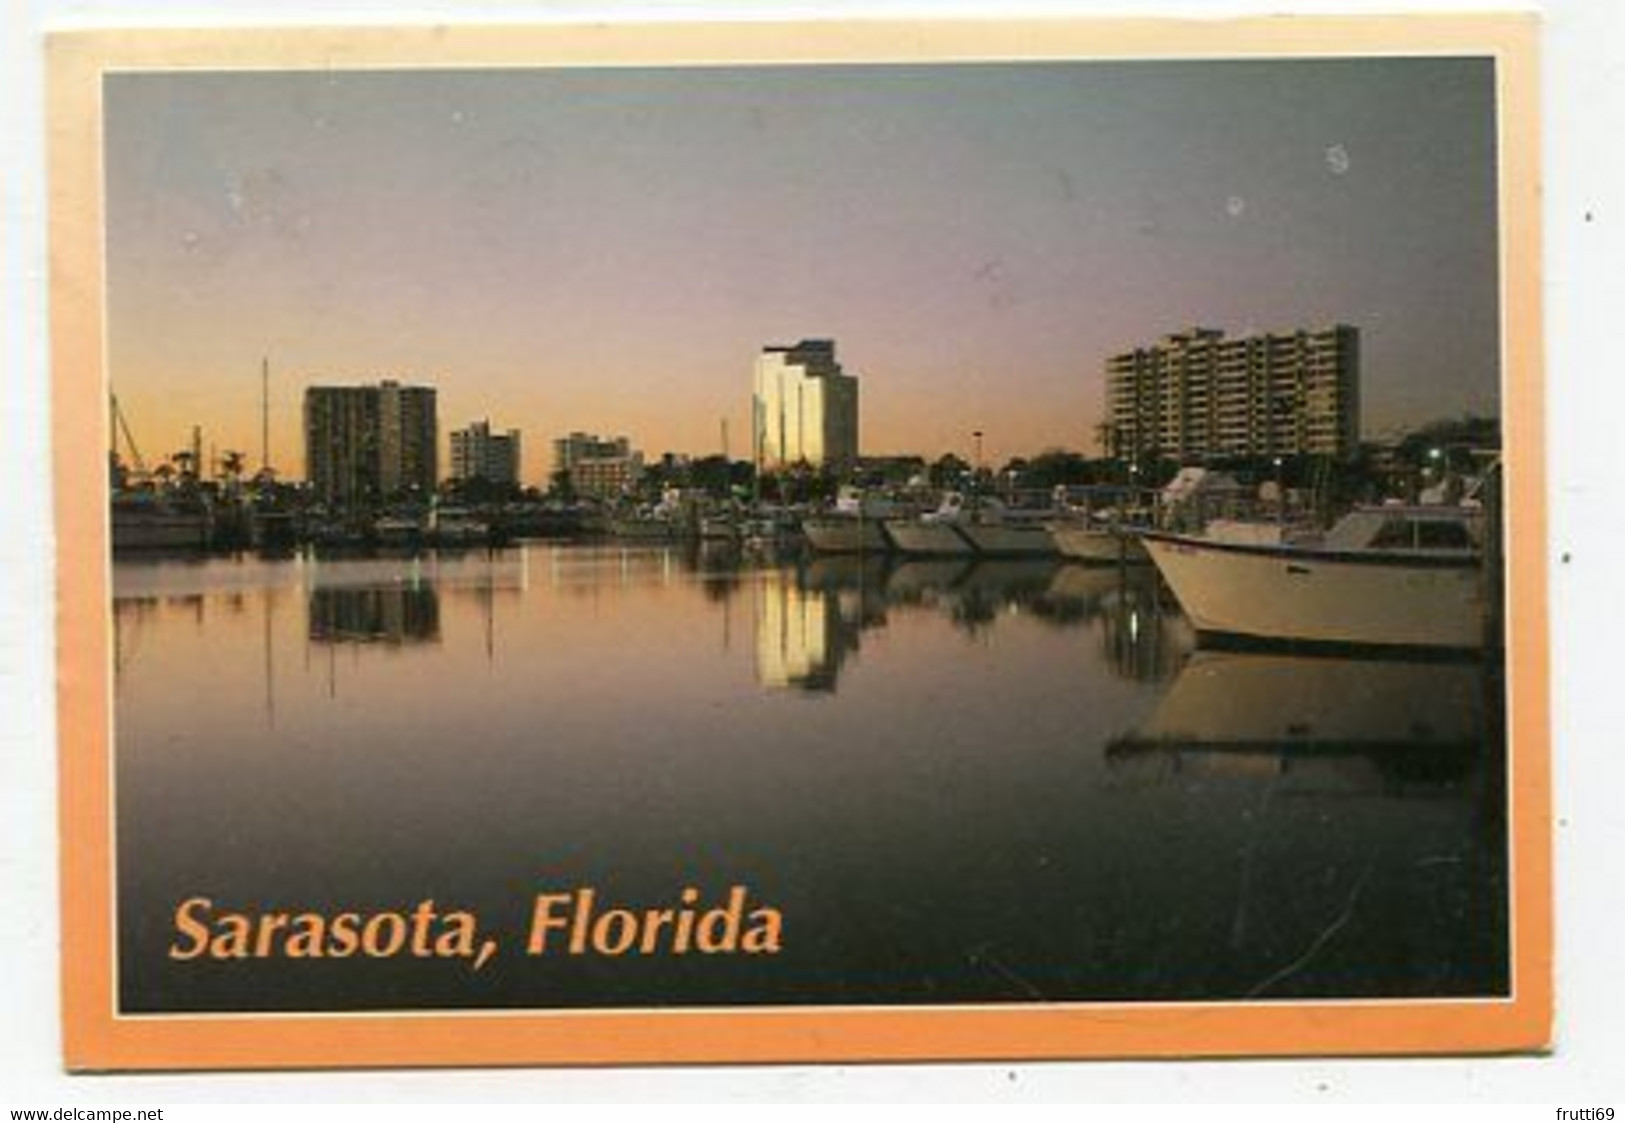 AK 016918 USA - Florida - Sarasota - Sarasota